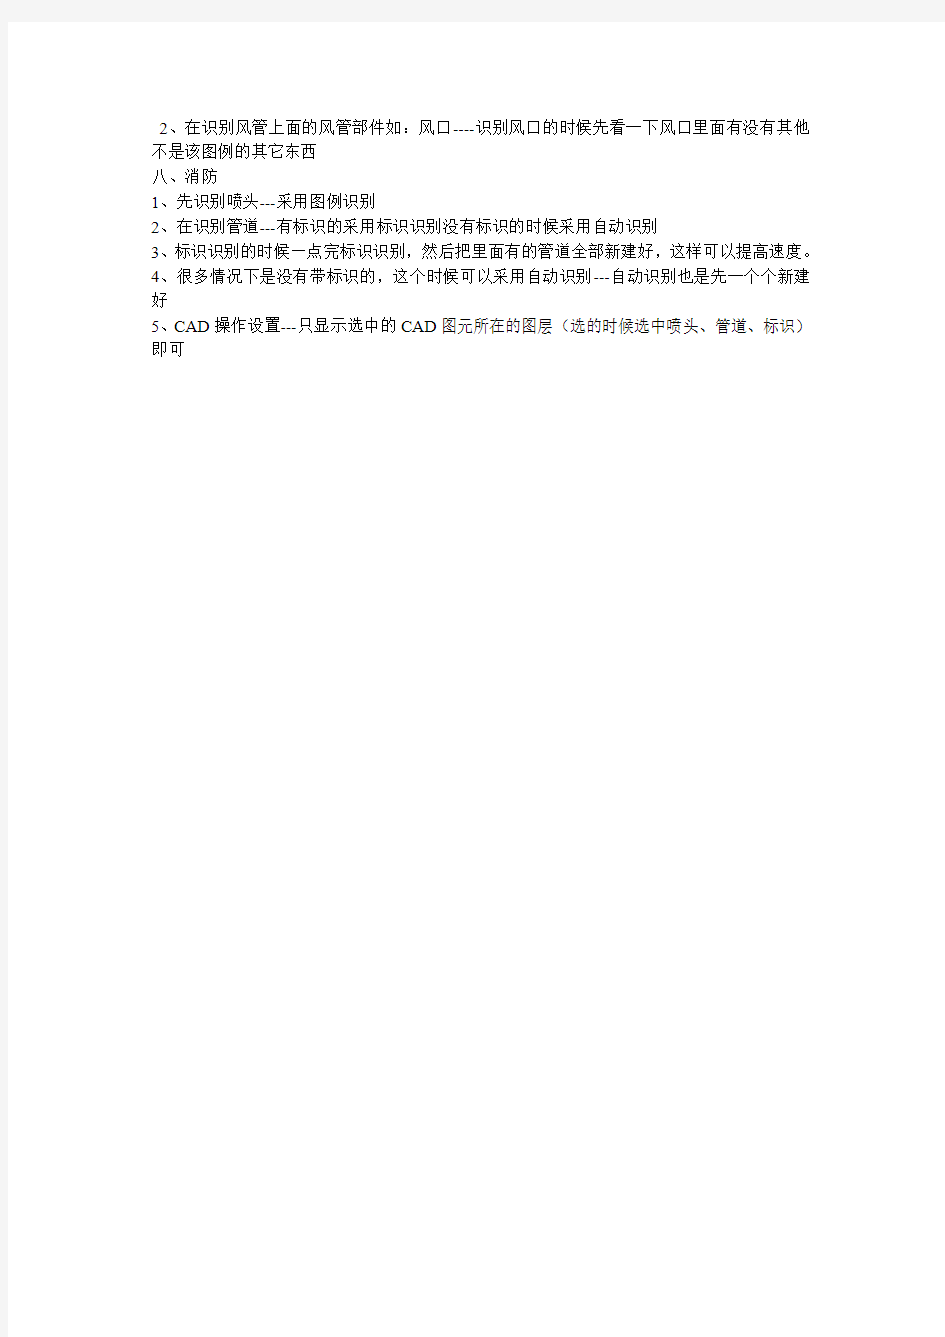 广联达安装算量软件简单操作步骤2013